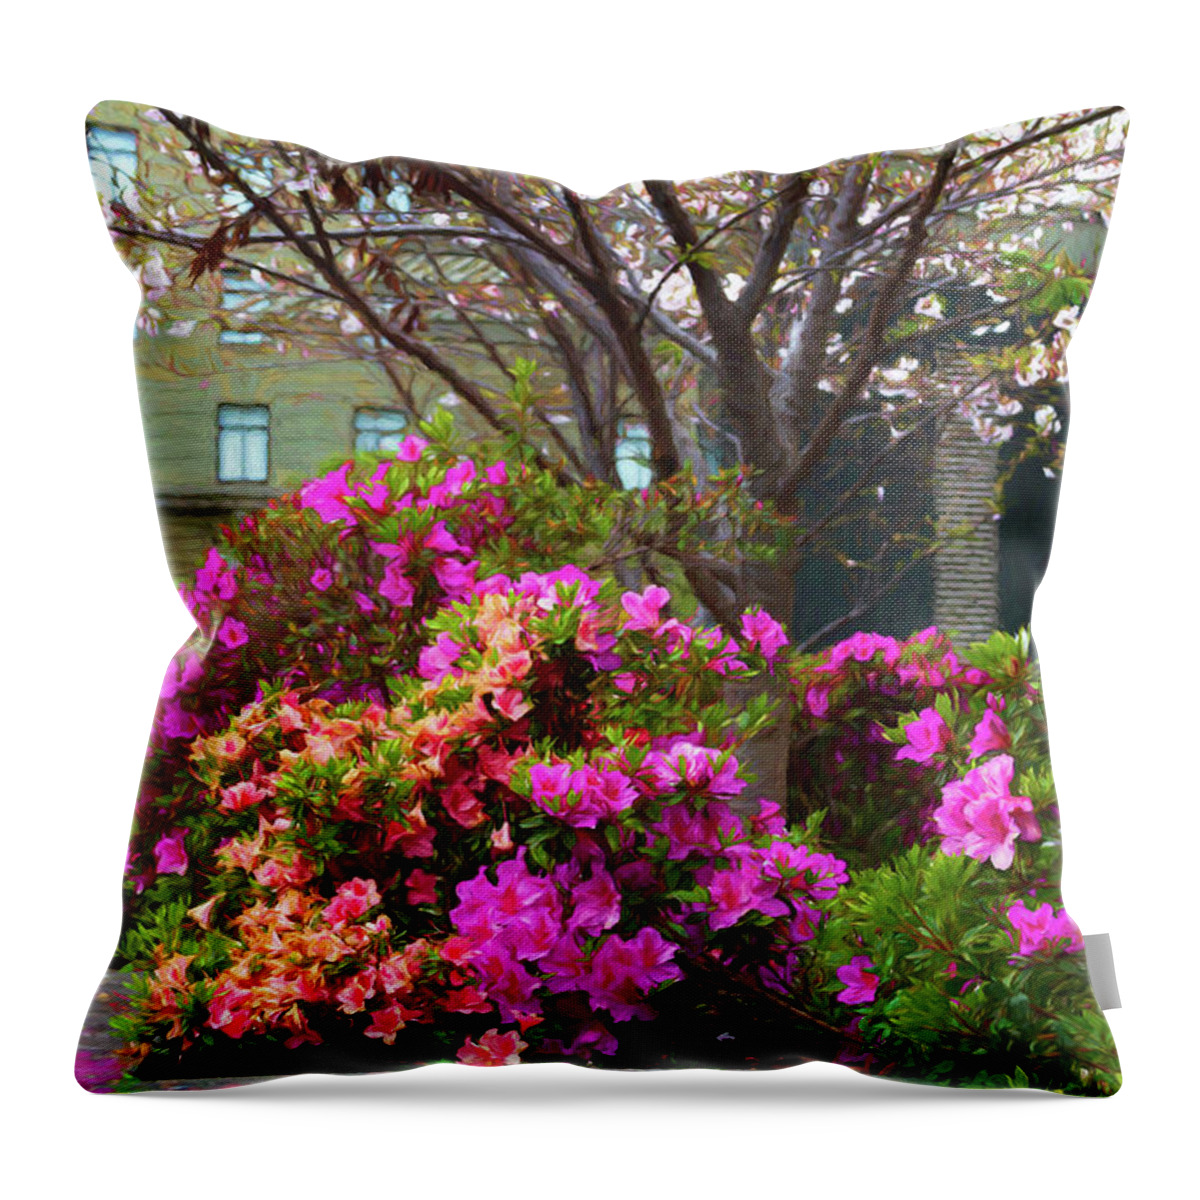 Azalea Throw Pillow featuring the photograph Spring Azaleas in the Park by Bonnie Follett